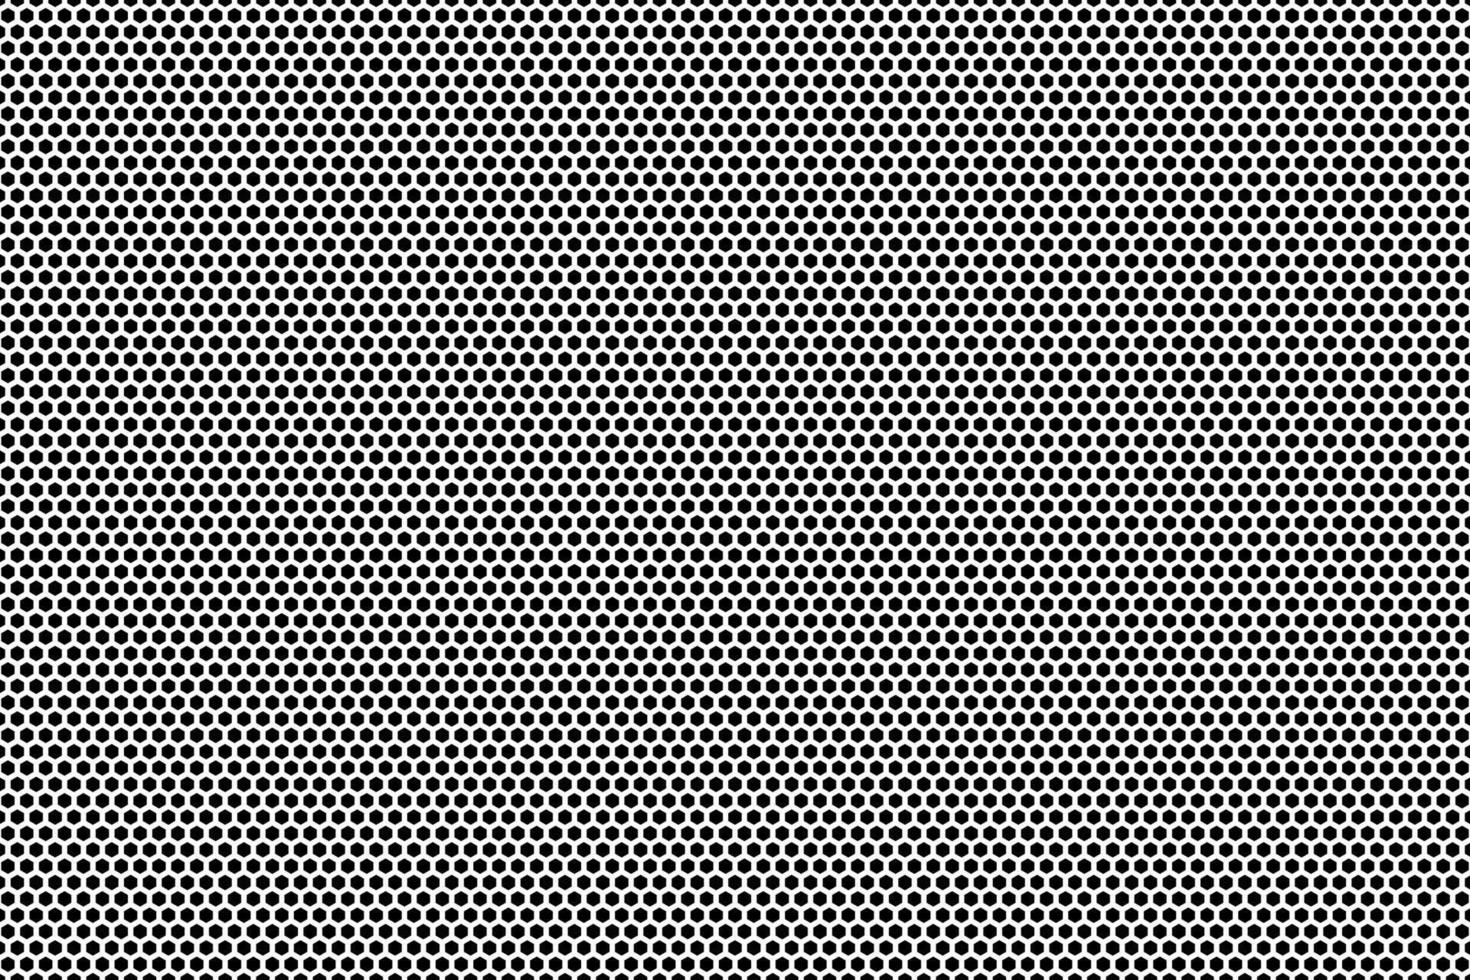 horizontaal halftone achtergrond sjabloon bestaande van zeshoeken, vector dots patroon.